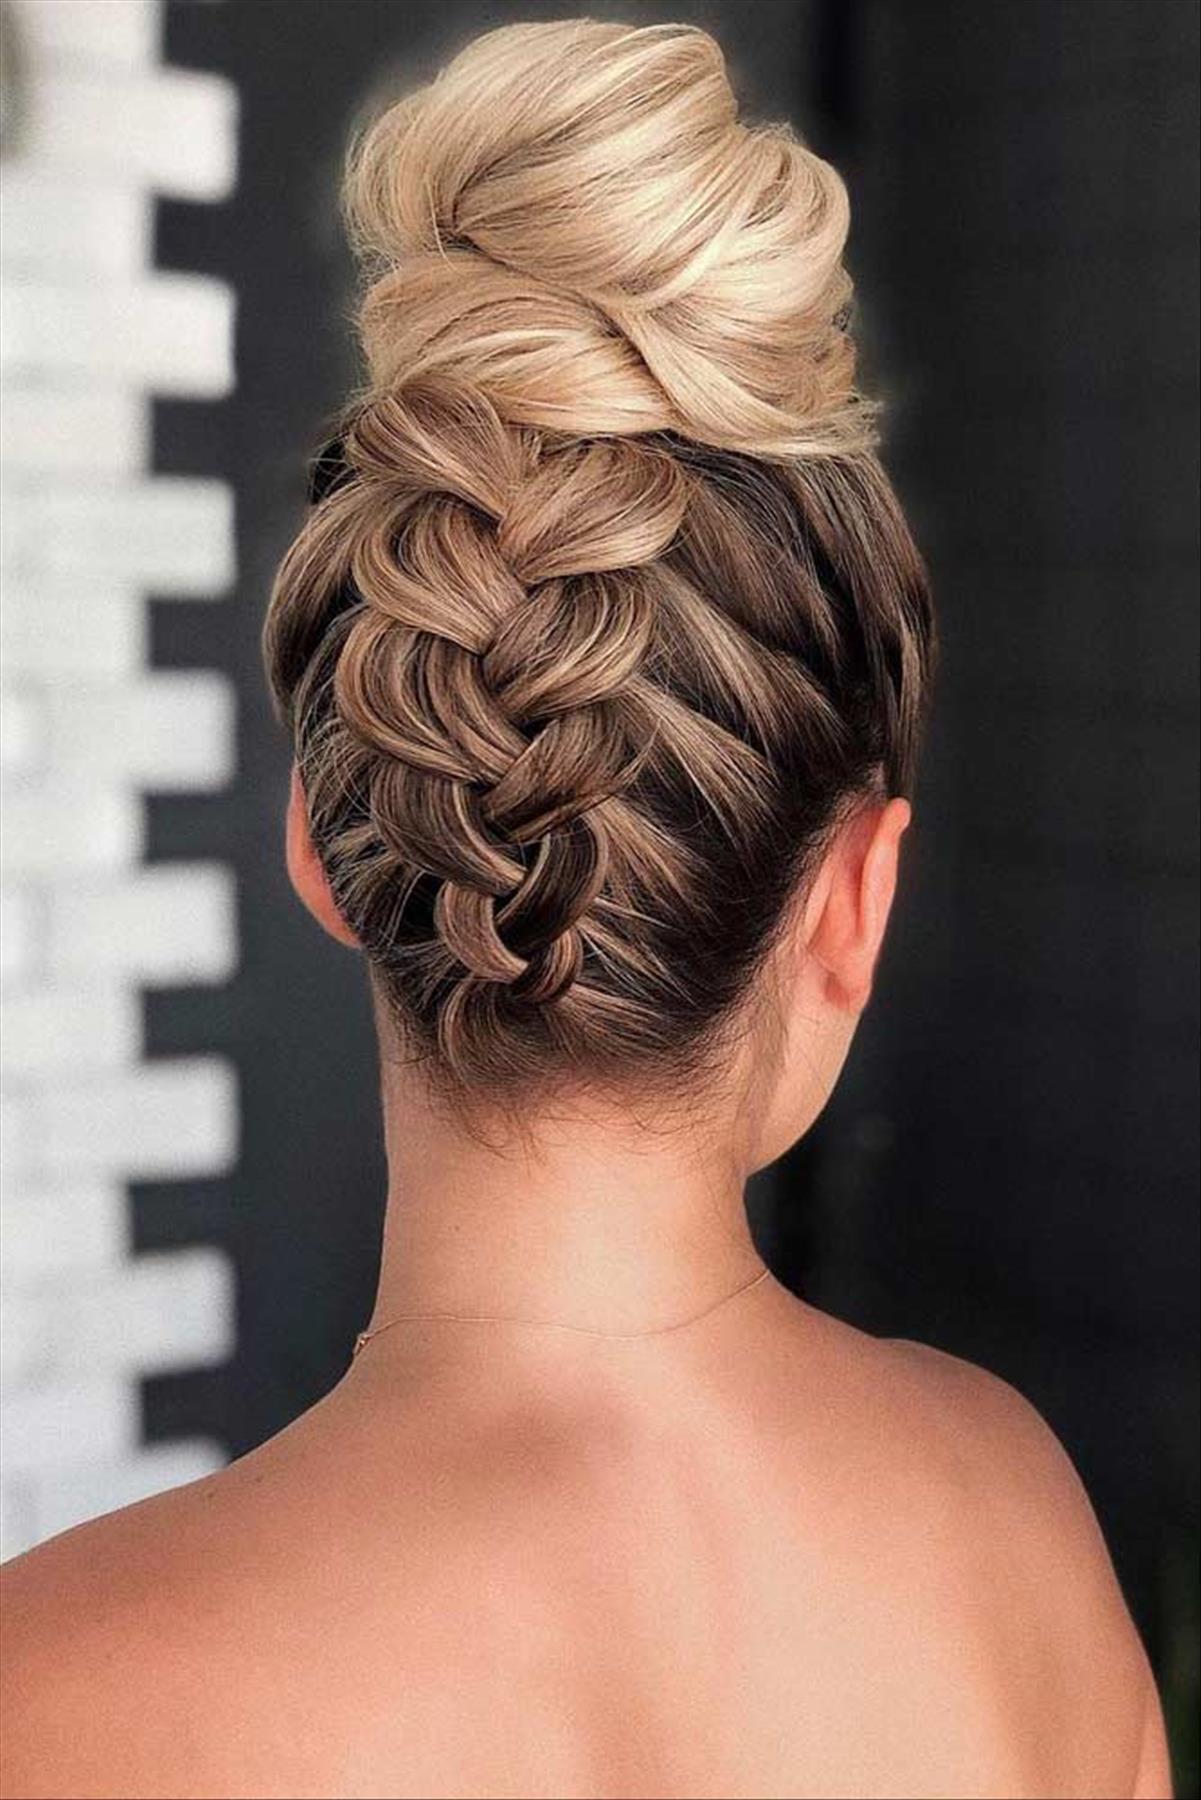 Elegant prom hairstyle design ideas- updos, half up half down, braids